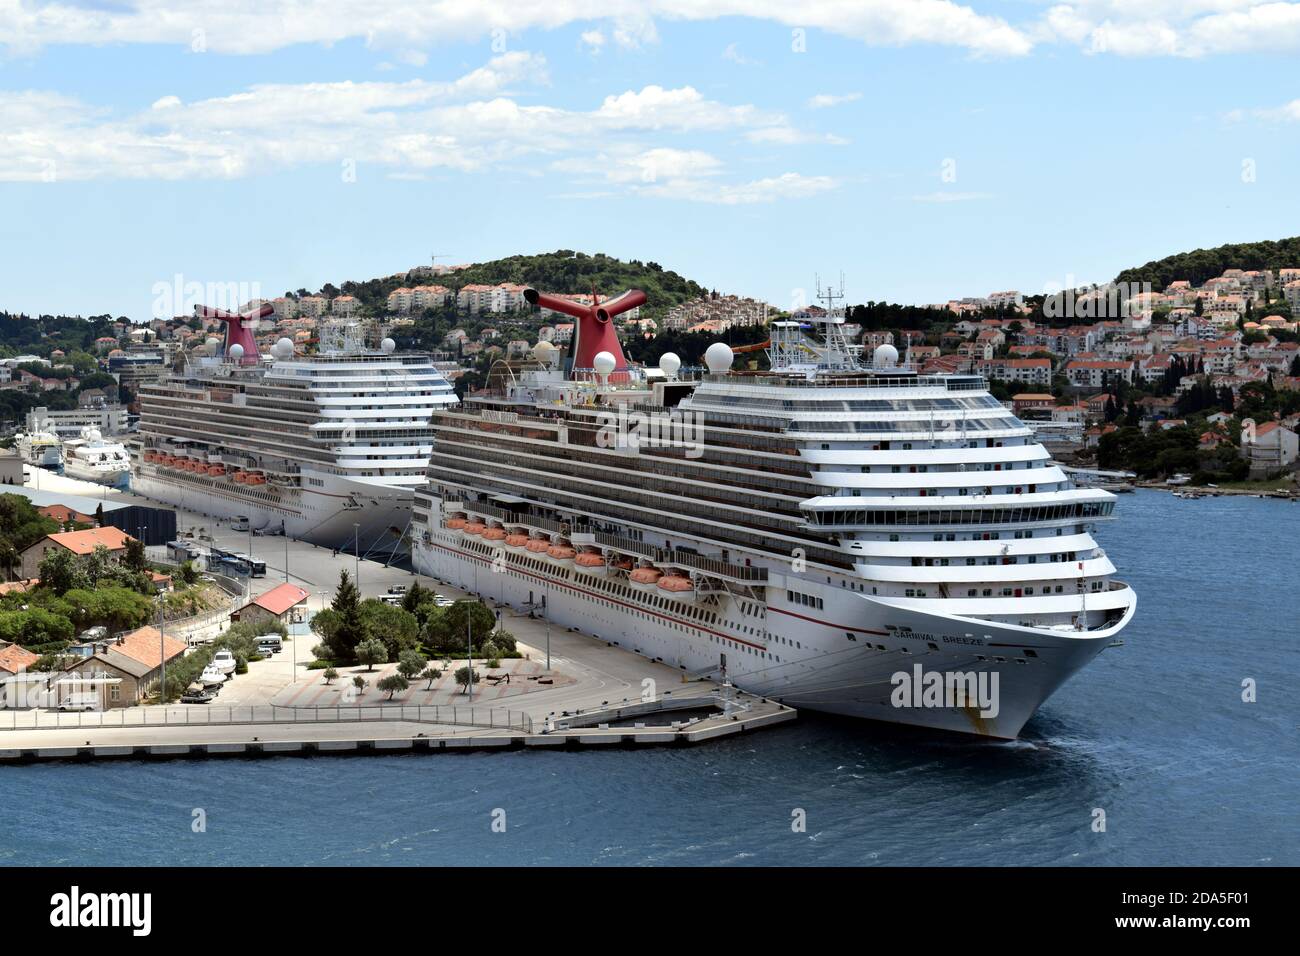 Carnival Cruises Schiffe, Carnival Breez und Carnival Magic landeten während der COVID Krise - Hafen von Dubrovnik, Kroatien, Mai 2020 Stockfoto